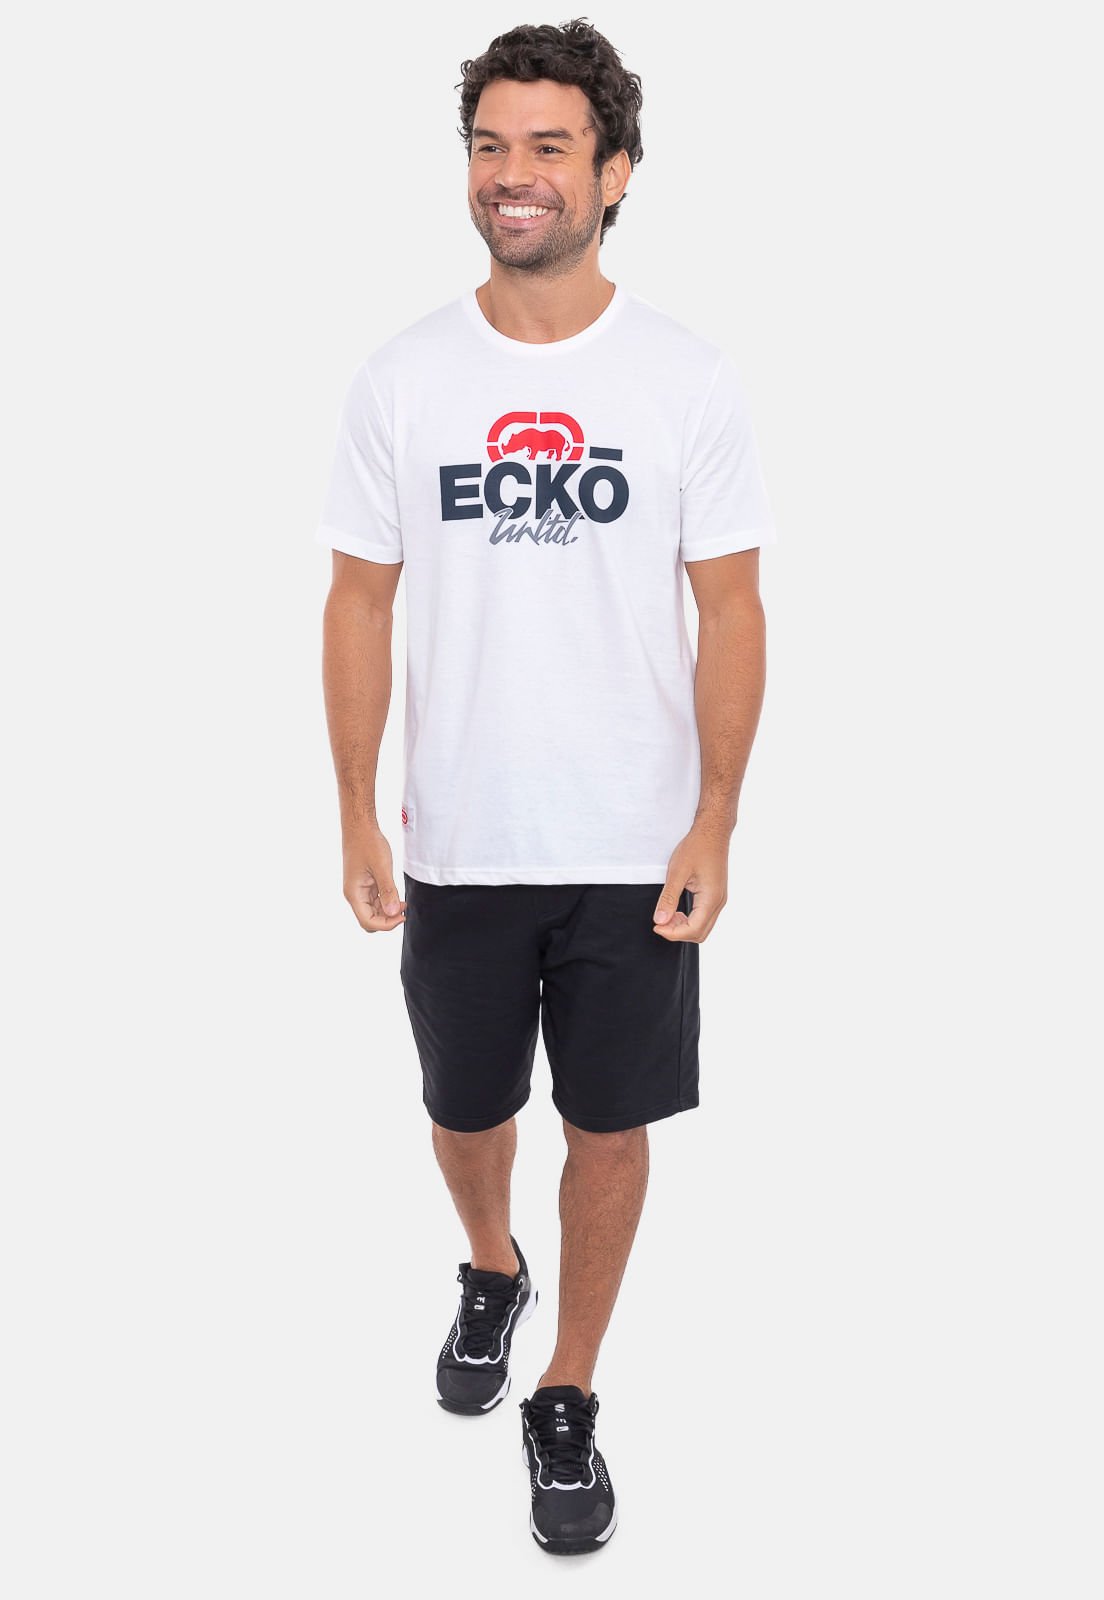 Camiseta Ecko Estampada Conia Branca Branco 5